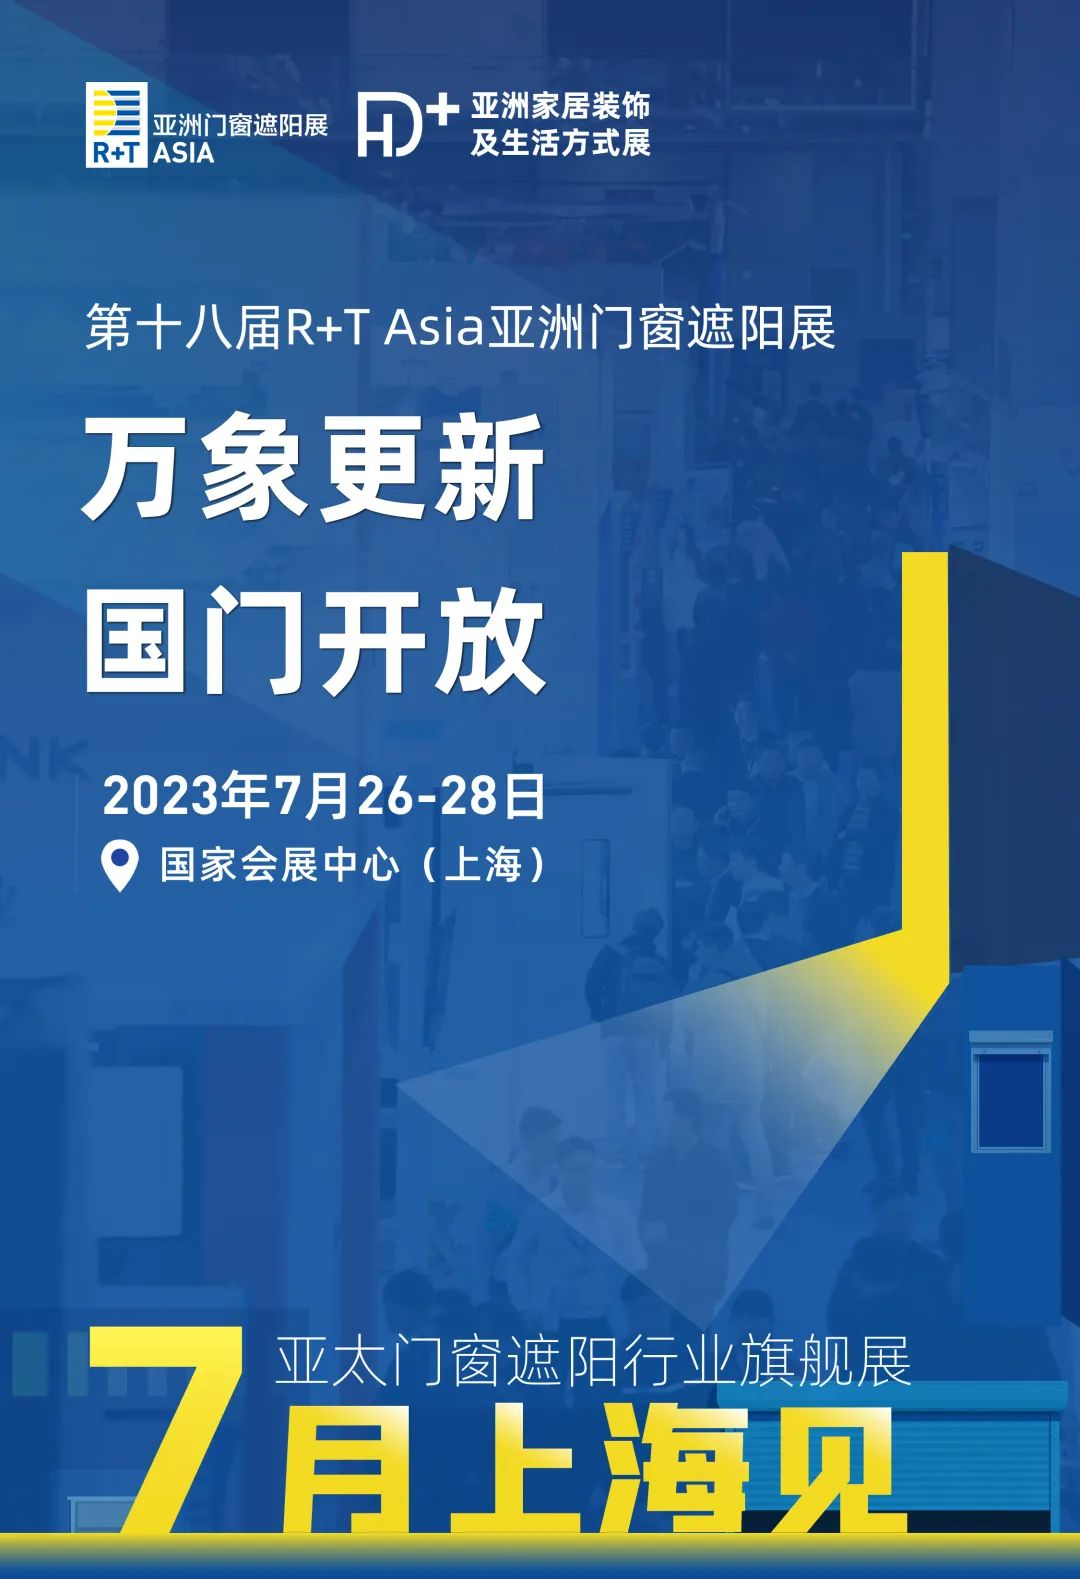 万象复苏，国 门开放 | R+T Asia亚洲门窗遮阳展/HD+ Asia亚洲家居装饰展，7月上海焕新而来！